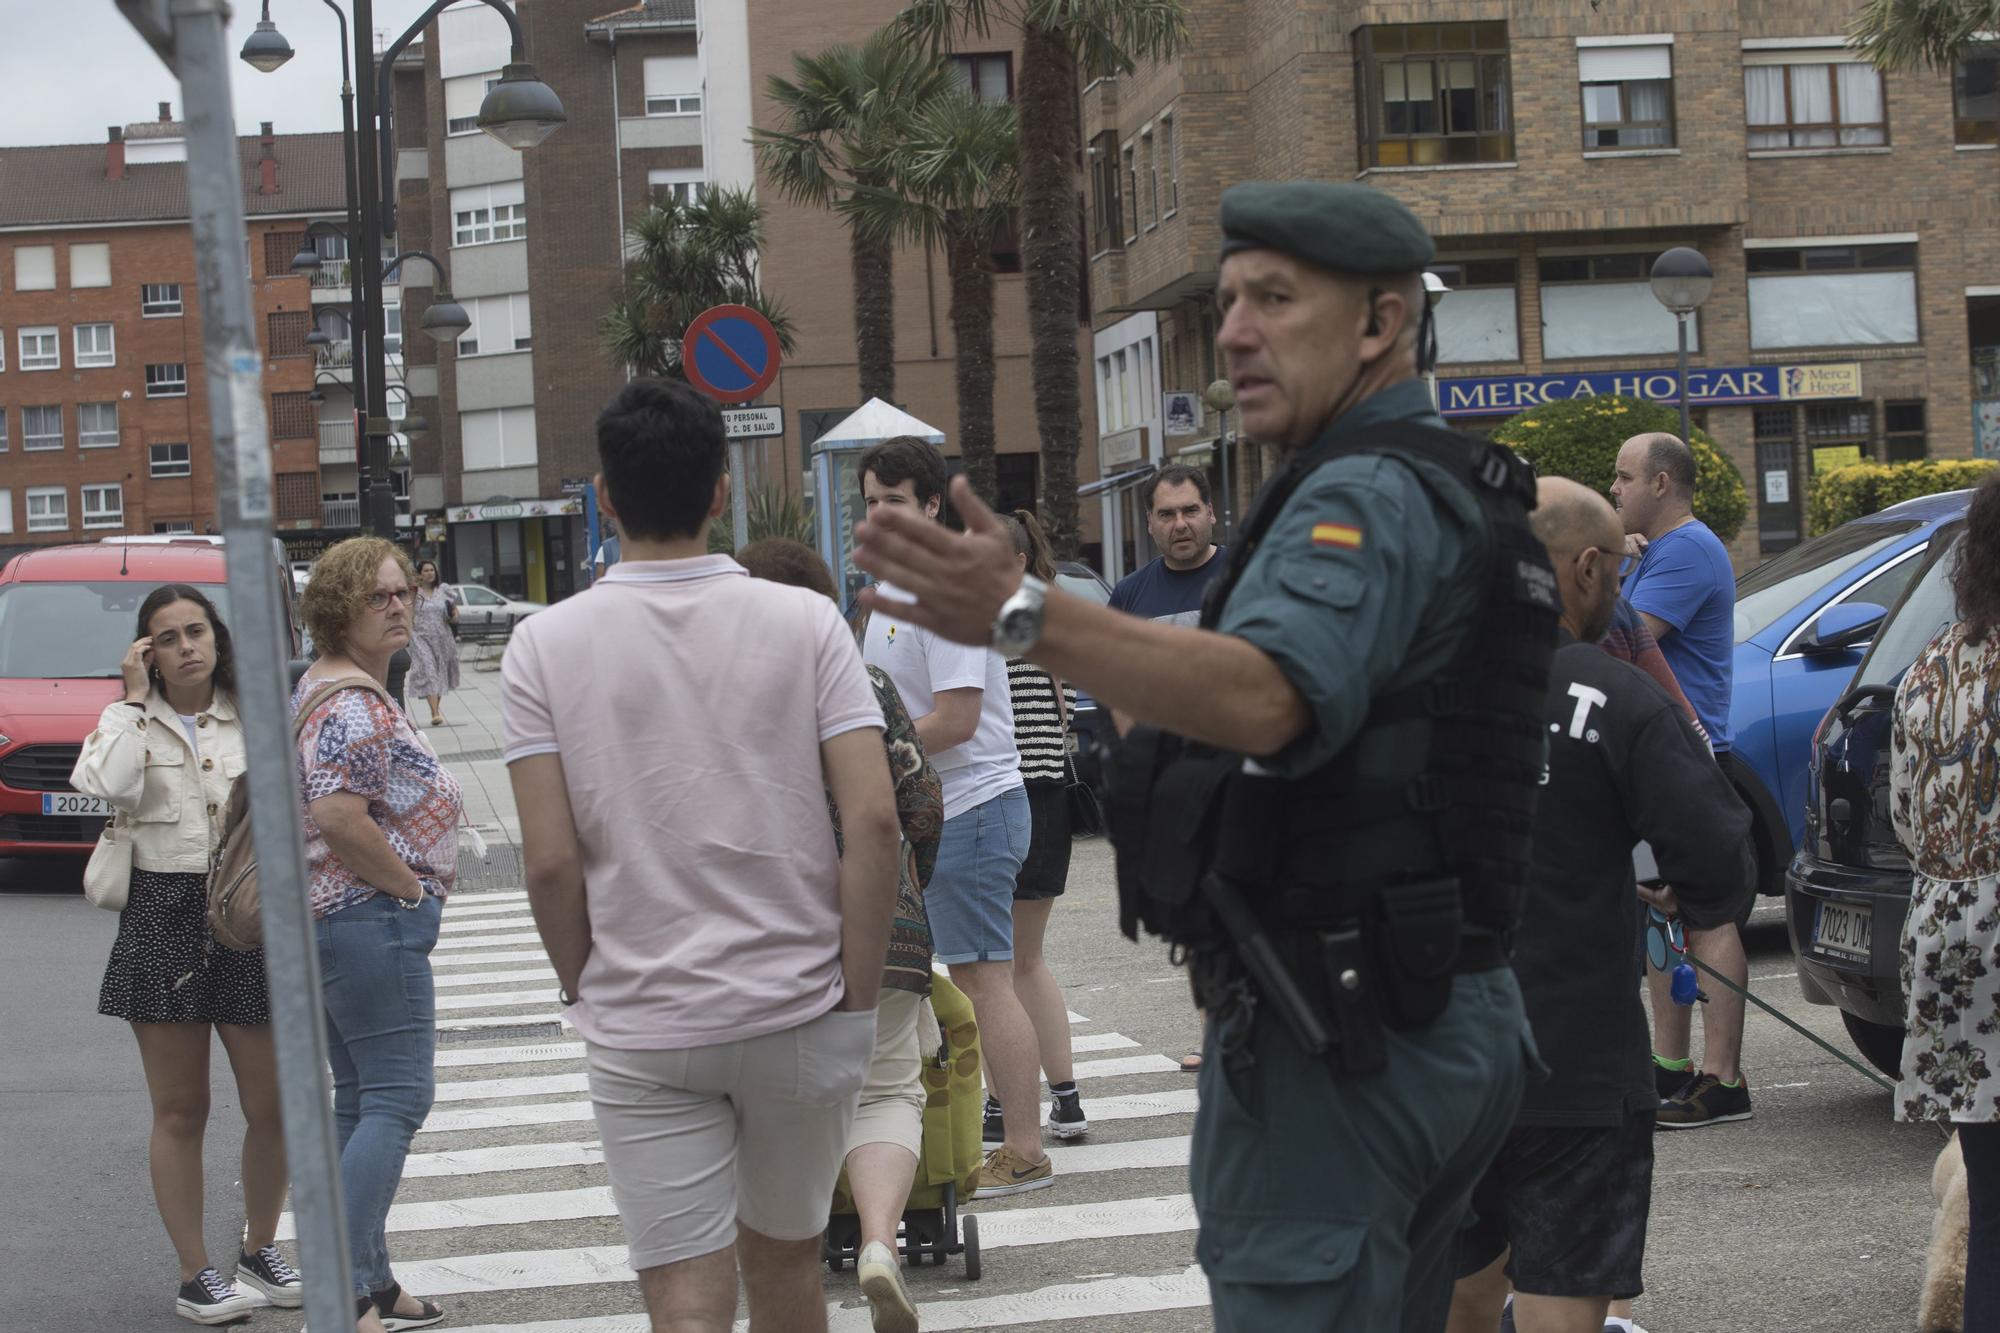 En imágenes: Un joven armado se atrinchera en un piso y provoca gran alarma en el vecindario, en Castrillón